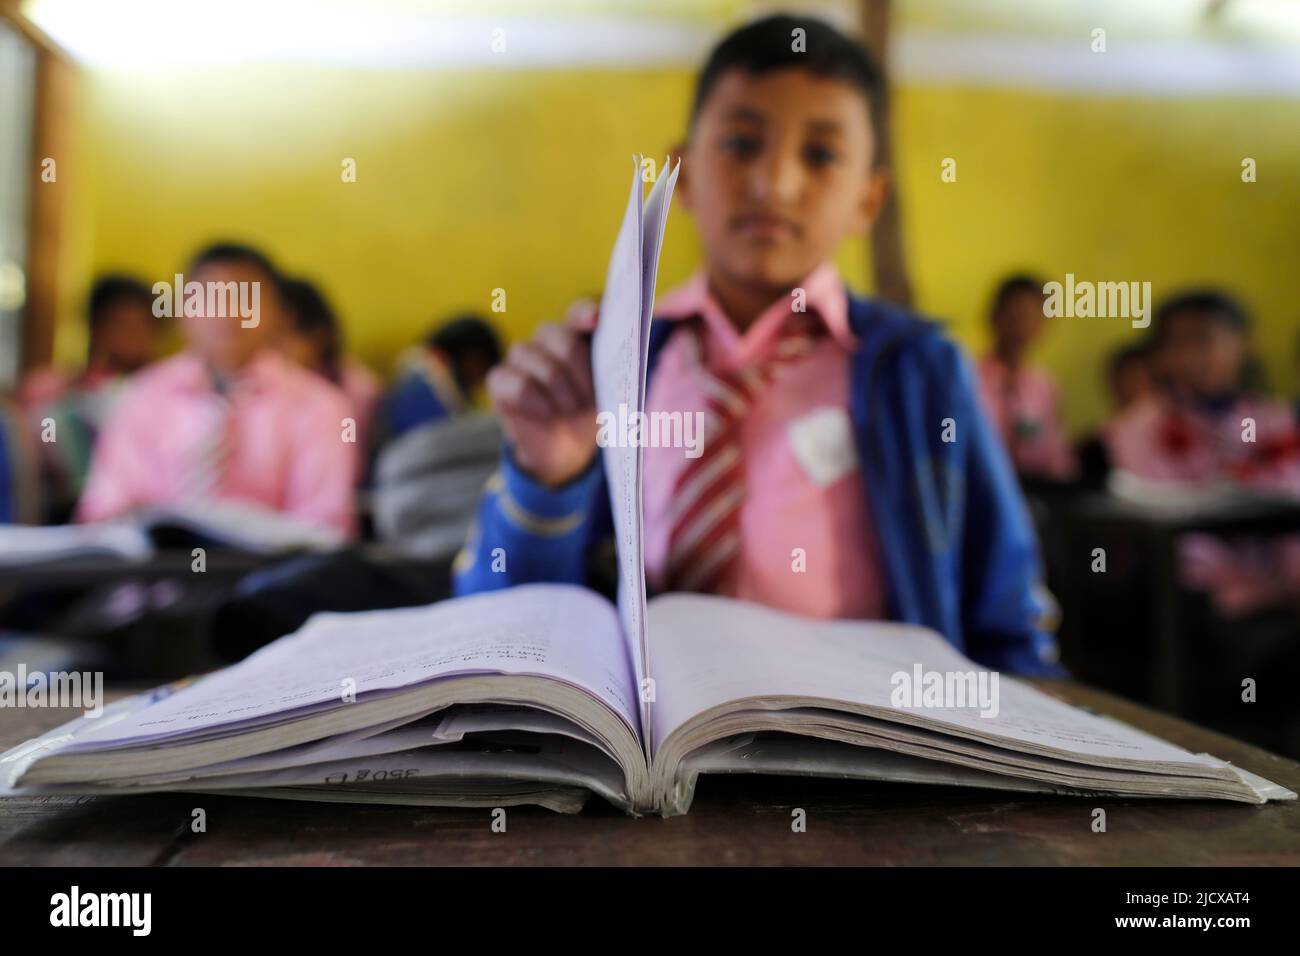 École primaire, garçon avec livre, concept de l'éducation et de la vie scolaire, Lapilang, Dolakha, Népal, Asie Banque D'Images